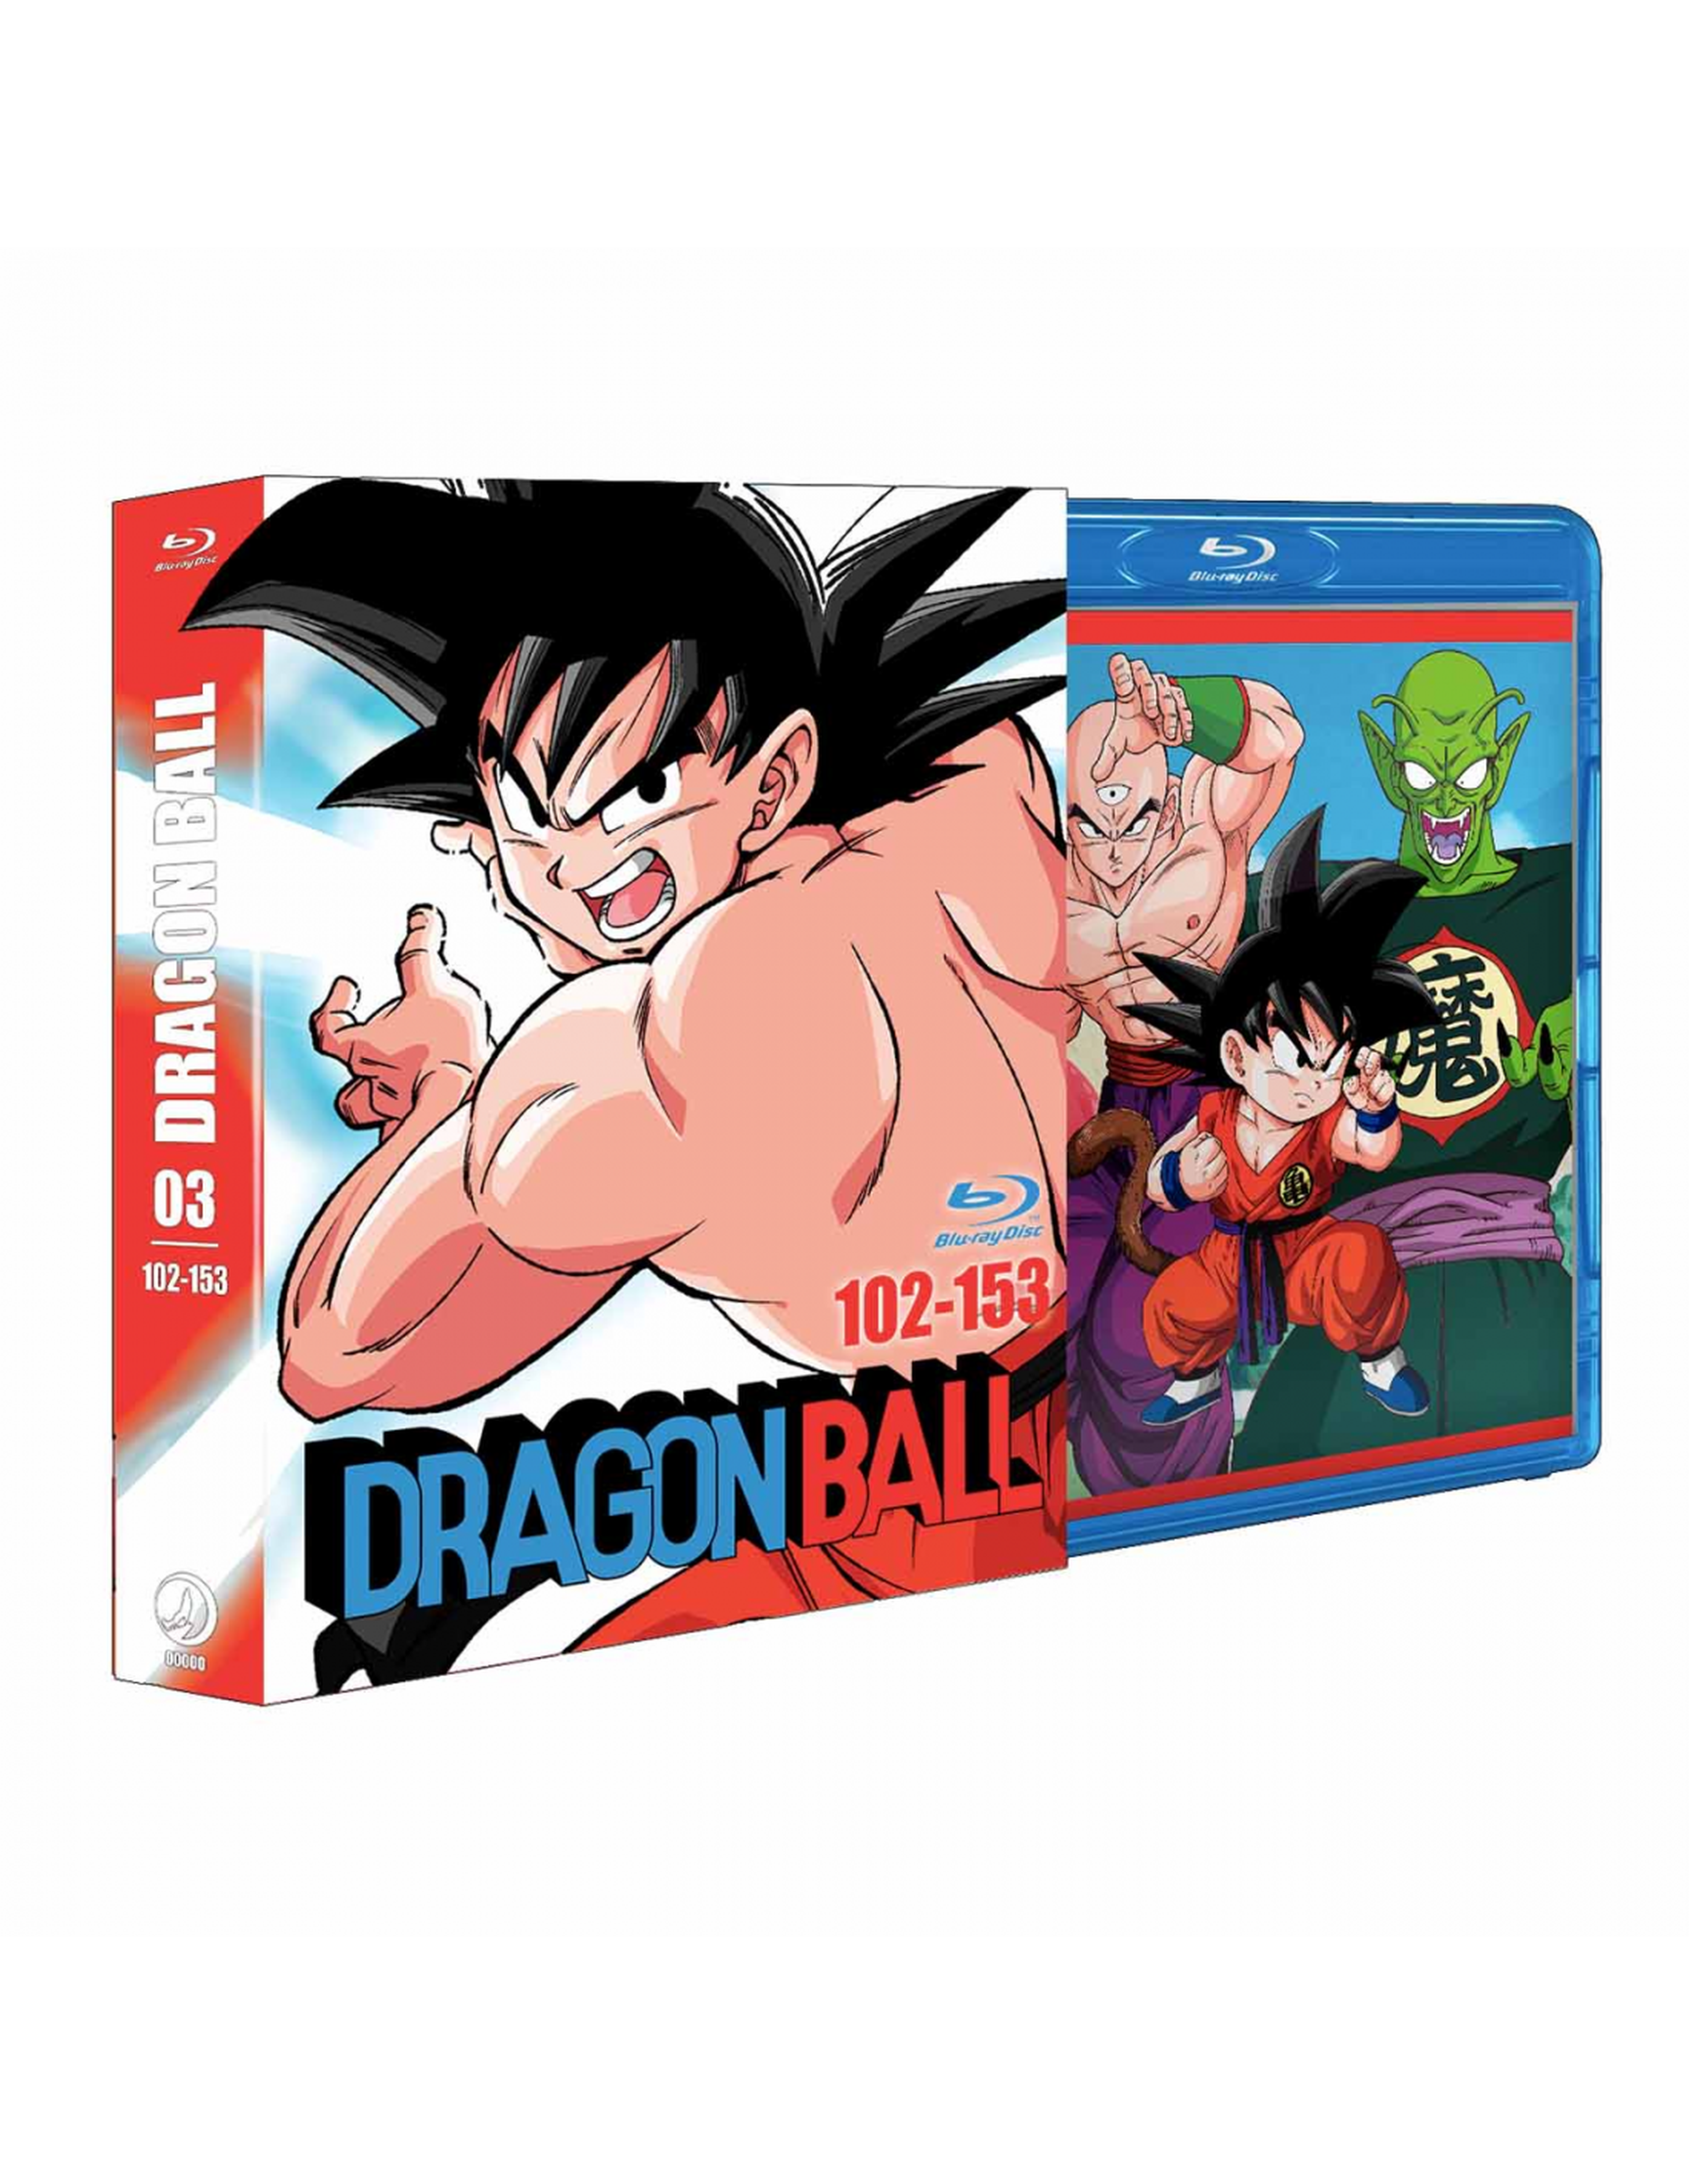 Fecha de lanzamiento y portada del Box 3 definitivo de Dragon Ball en Blu-ray. ¡La serie de Akira Toriyama en alta definición!